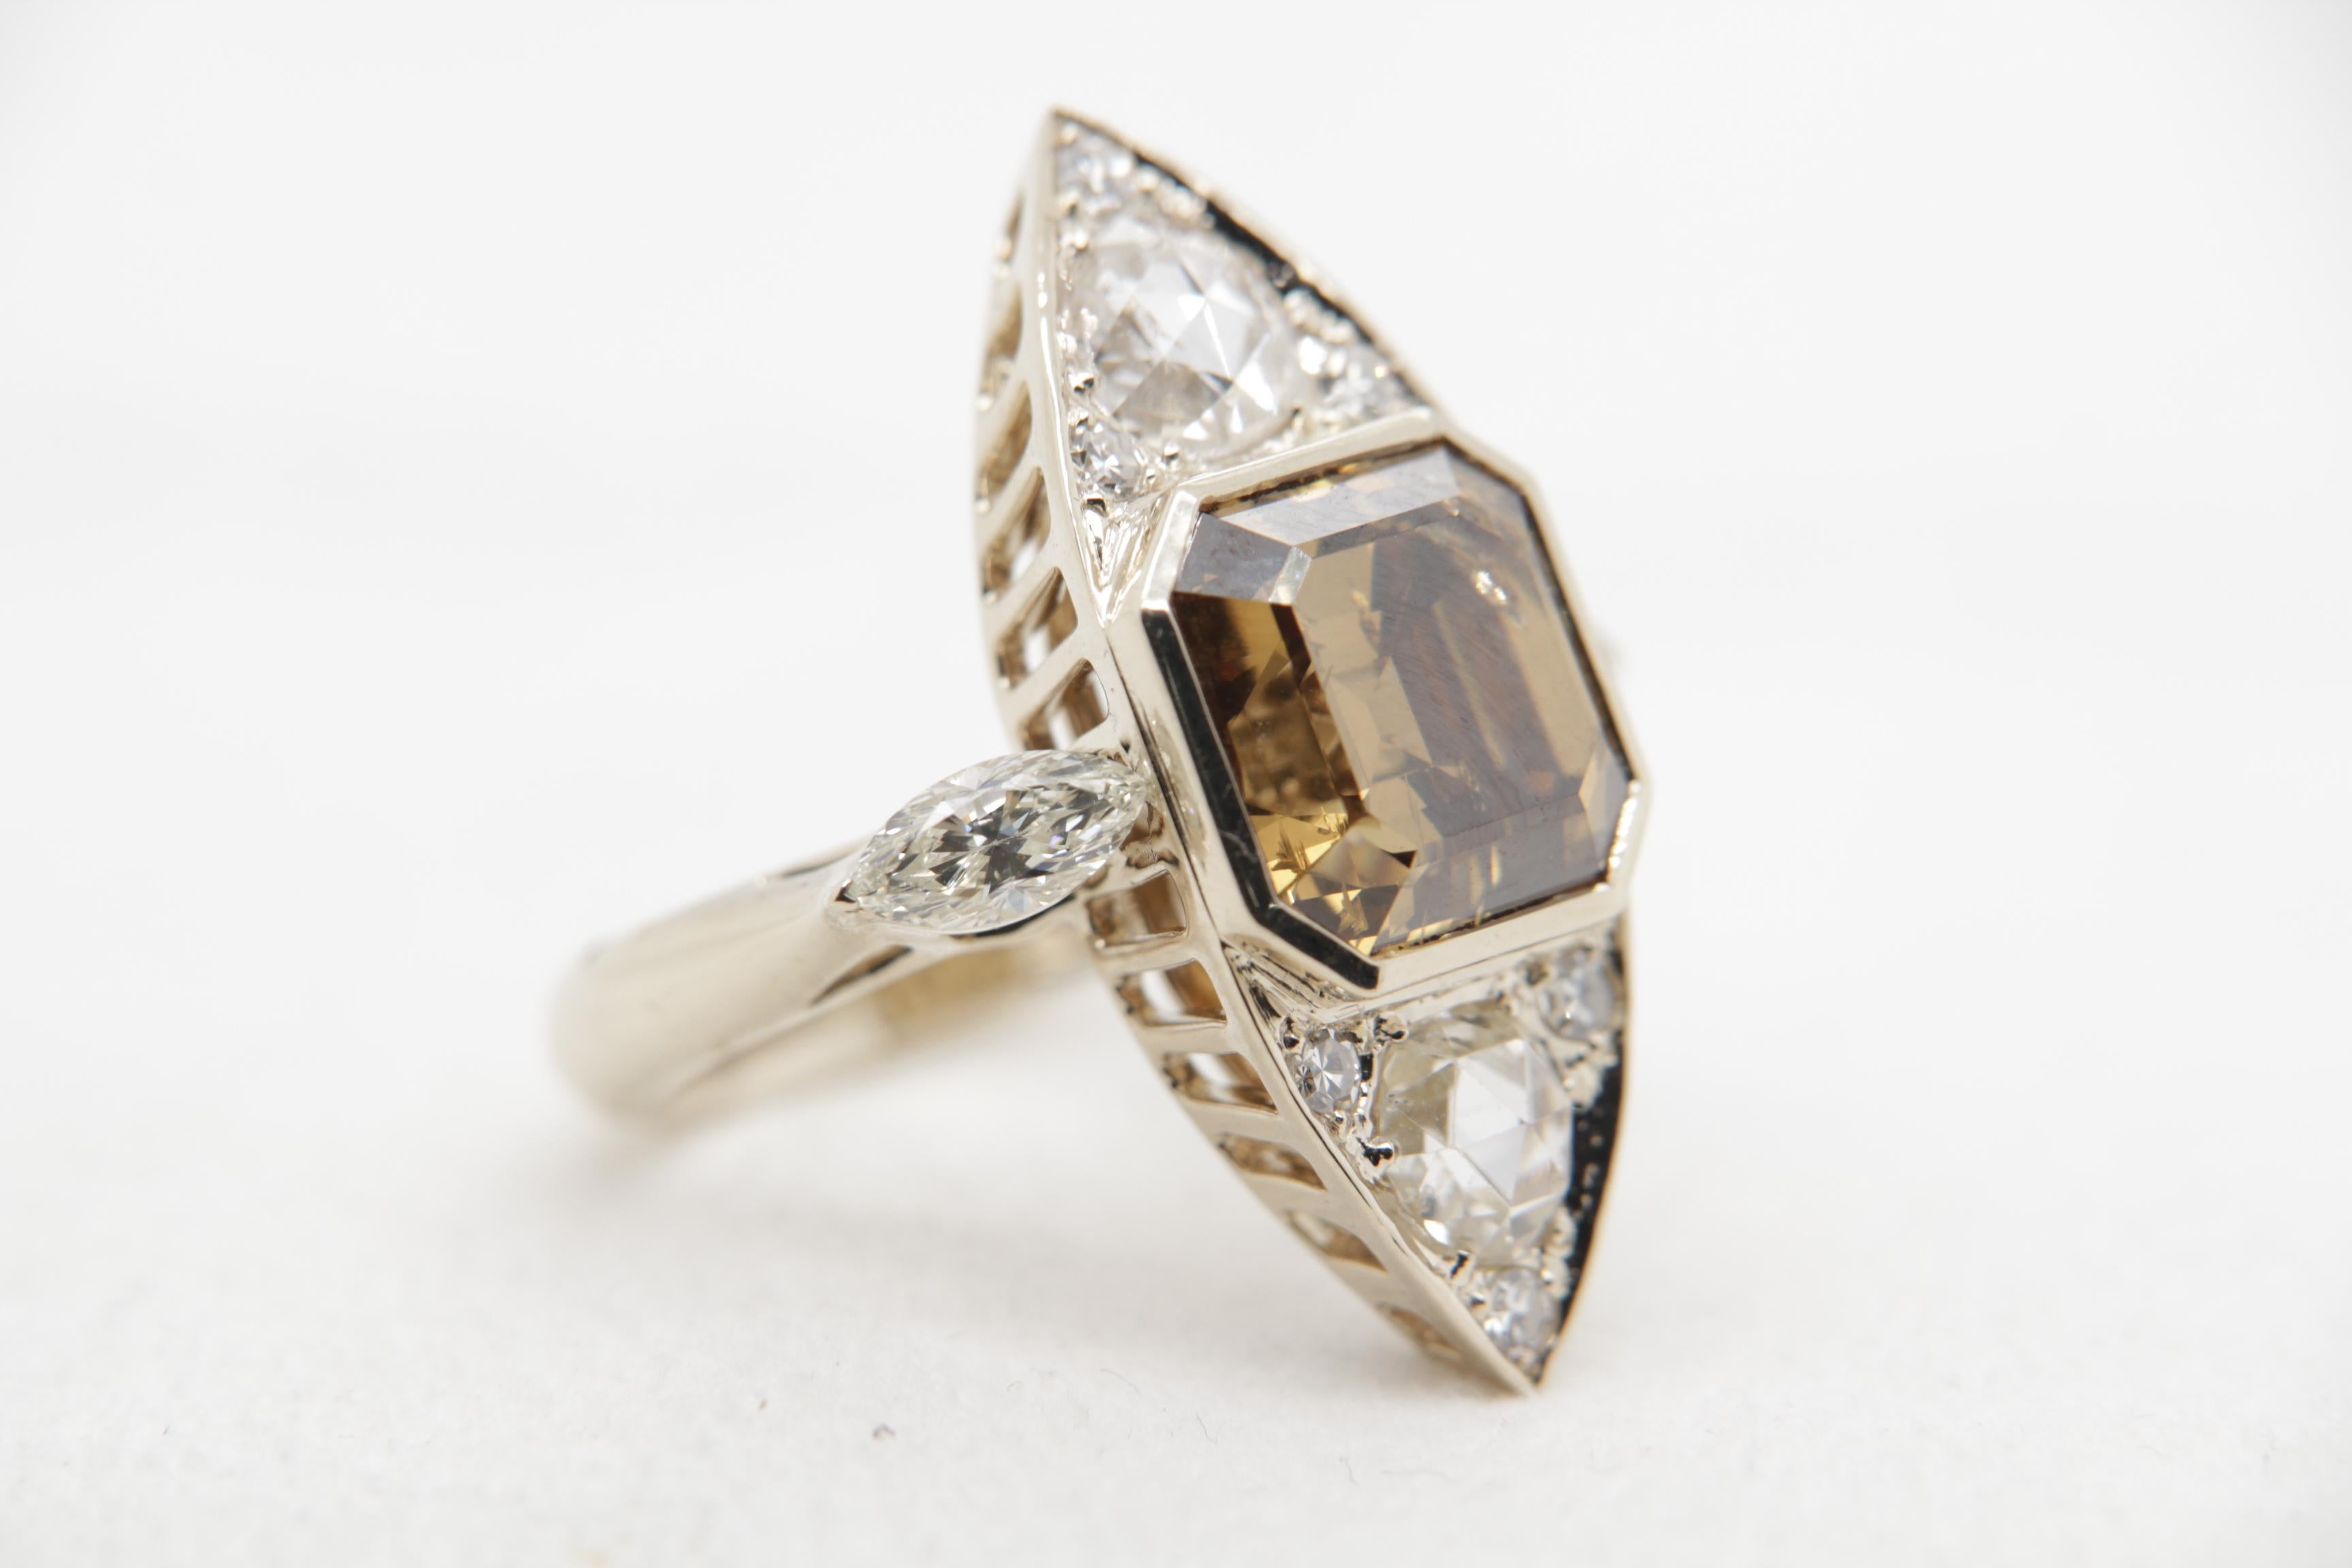 Square Cut GIA Certified 8.00 Carat Fancy Deep Brown-Yellow Diamond Ring in 18 Karat Gold